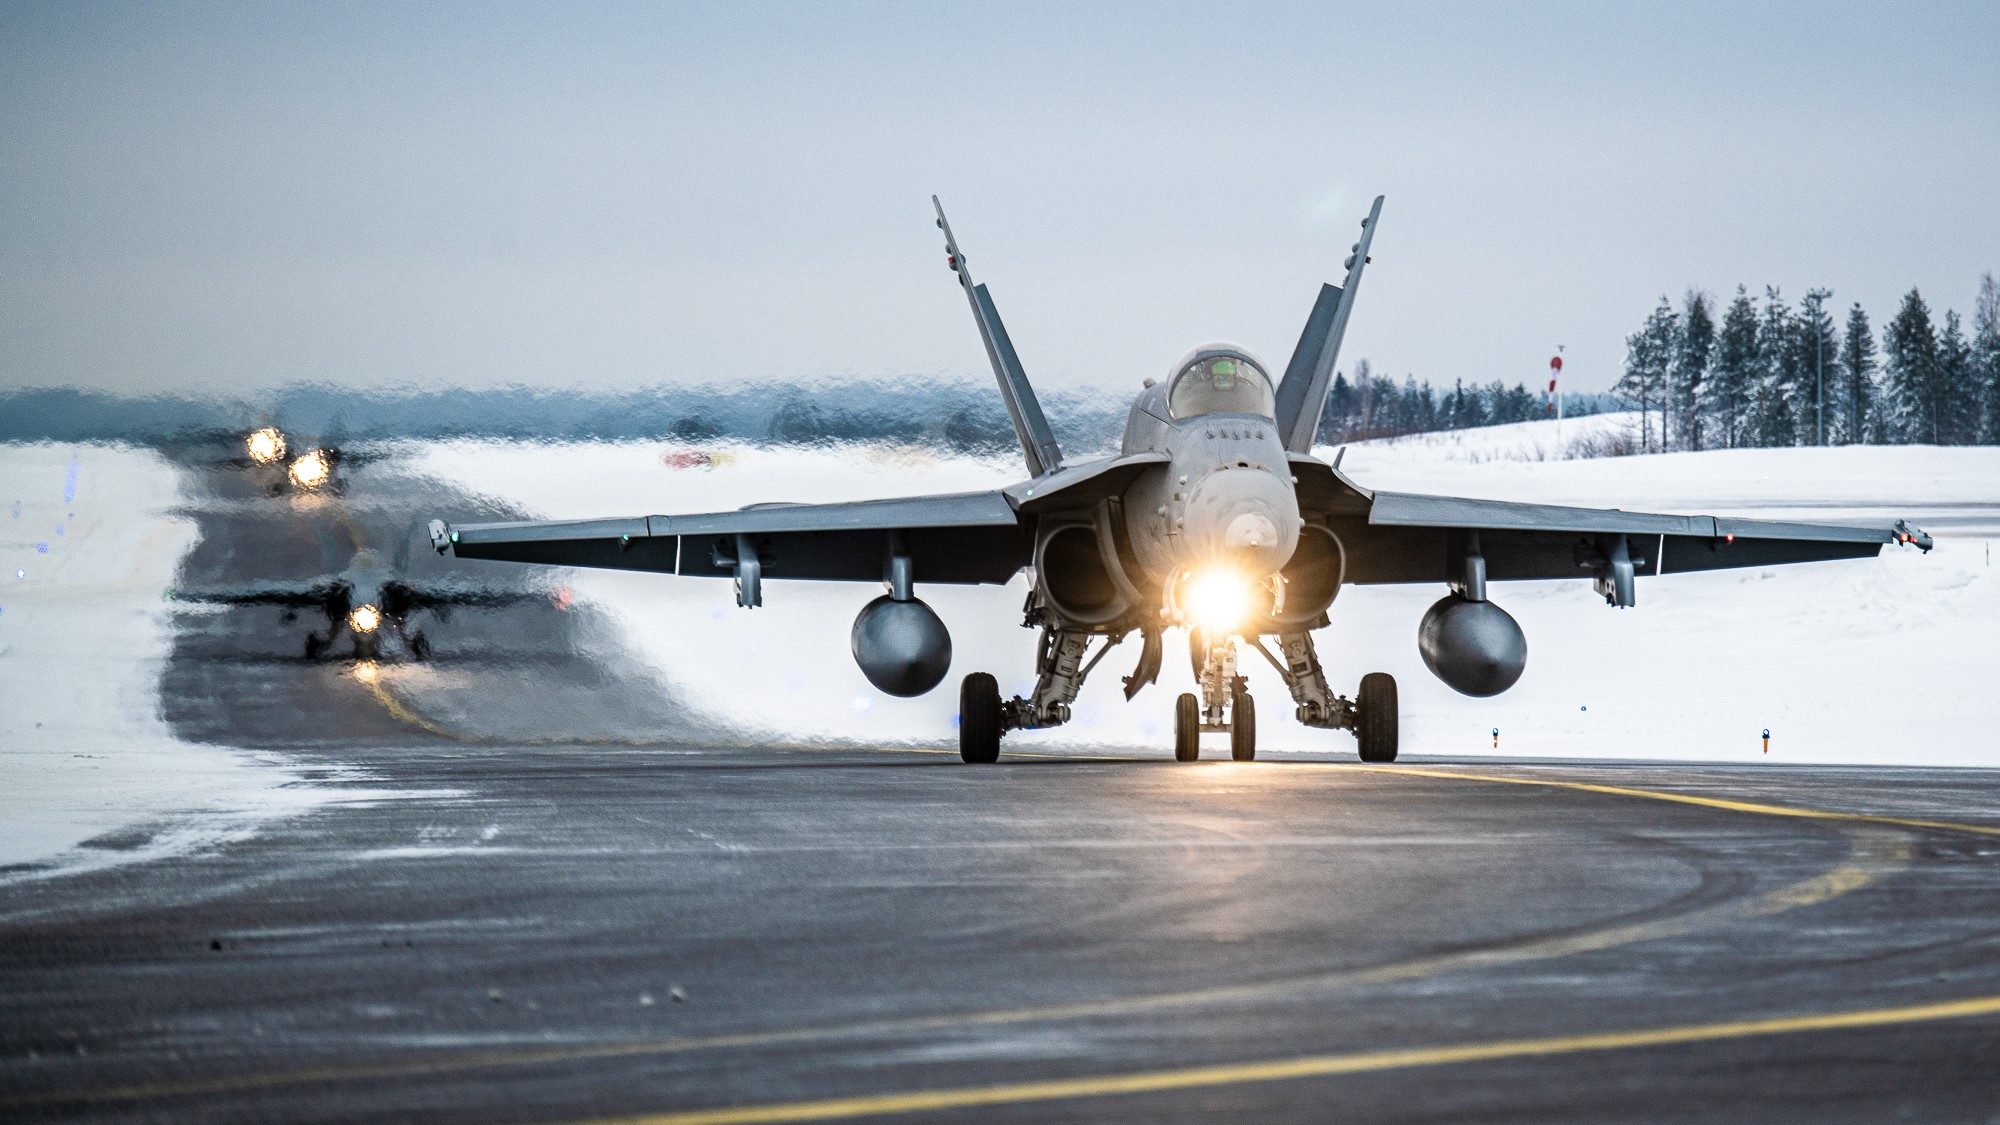 Neljä F/A-18 Hornet -hävittäjää rullaamassa